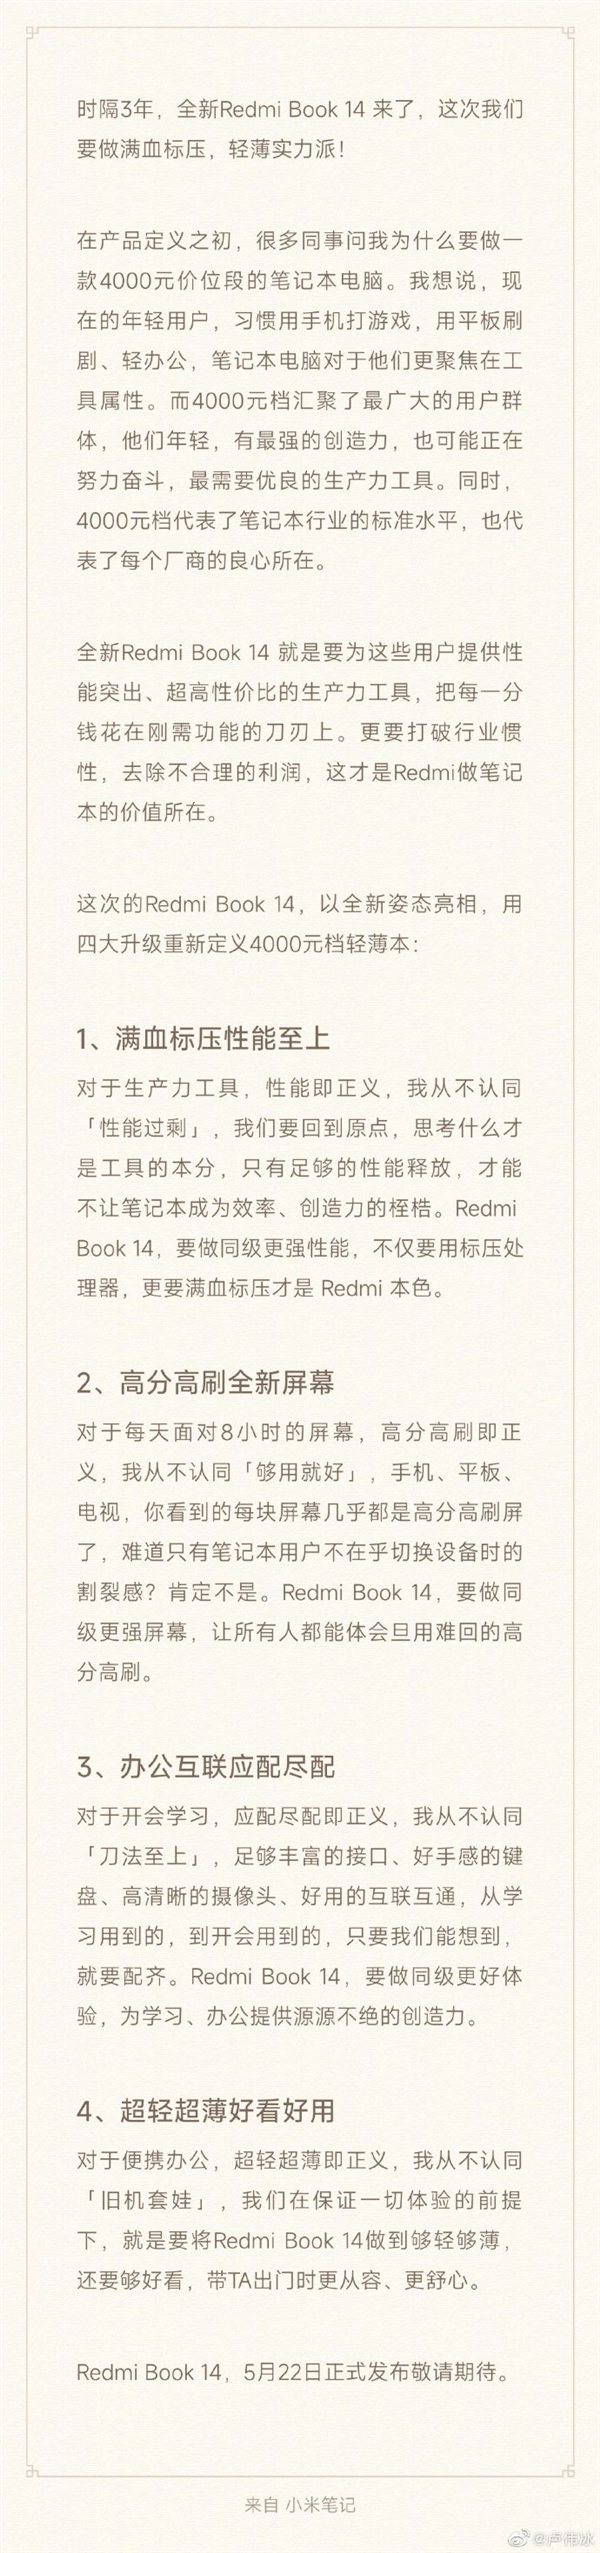 卢伟冰揭秘Redmi Book 14：4000元档四大升级 厂商良心所在